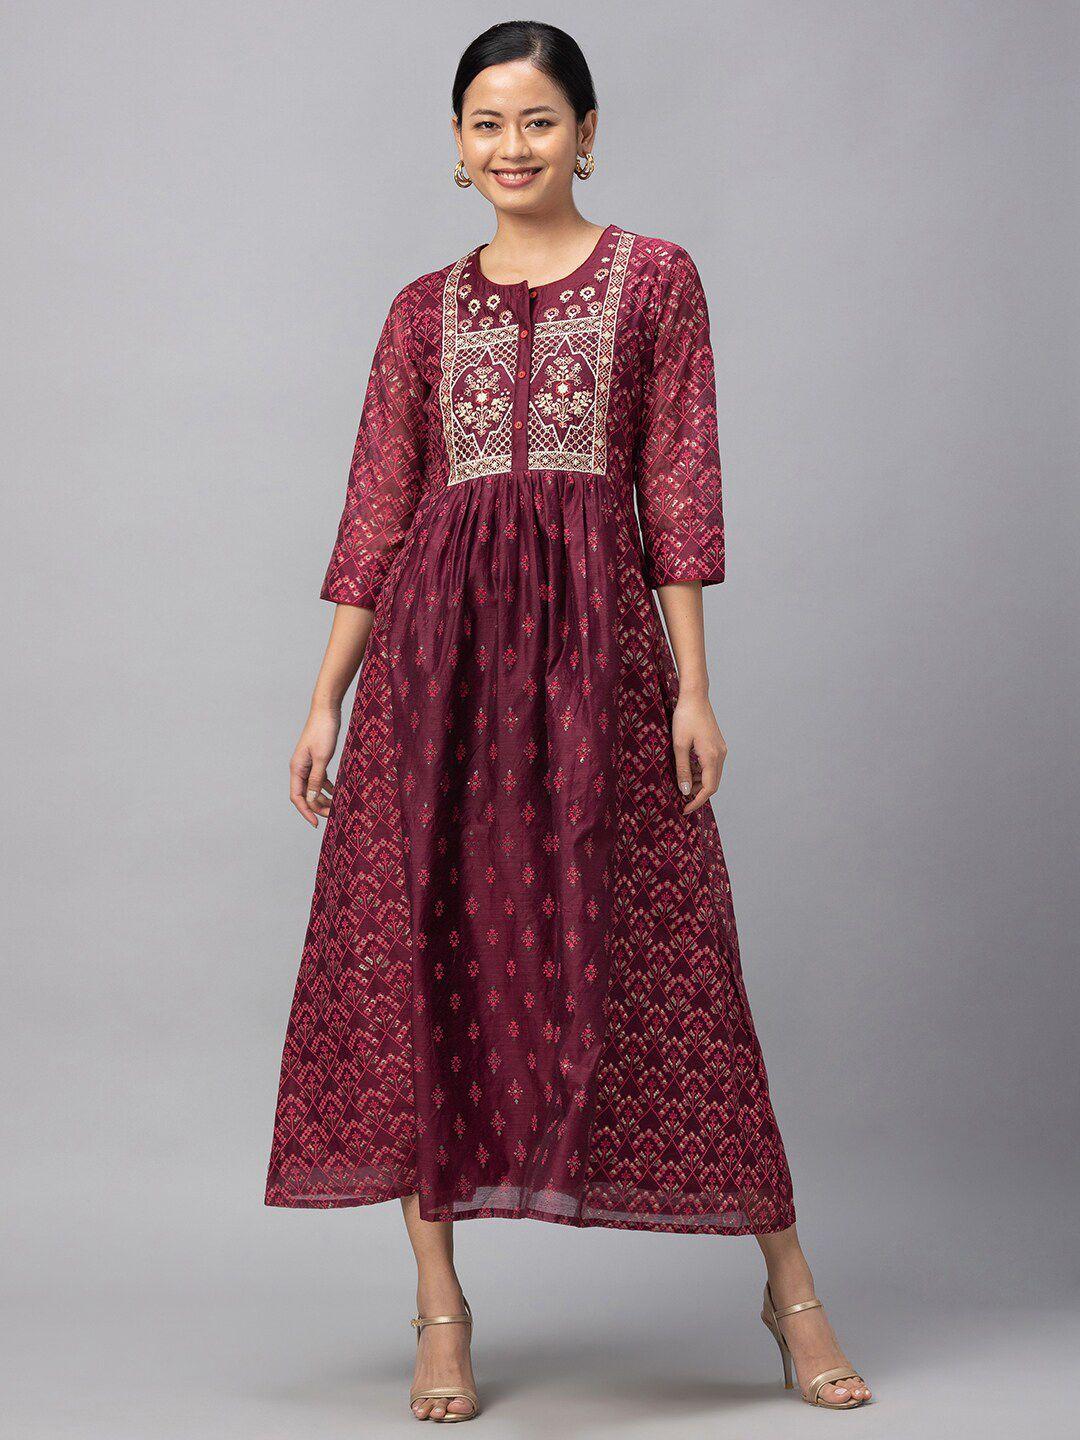 globus-burgundy-ethnic-motifs-ethnic-maxi-dress